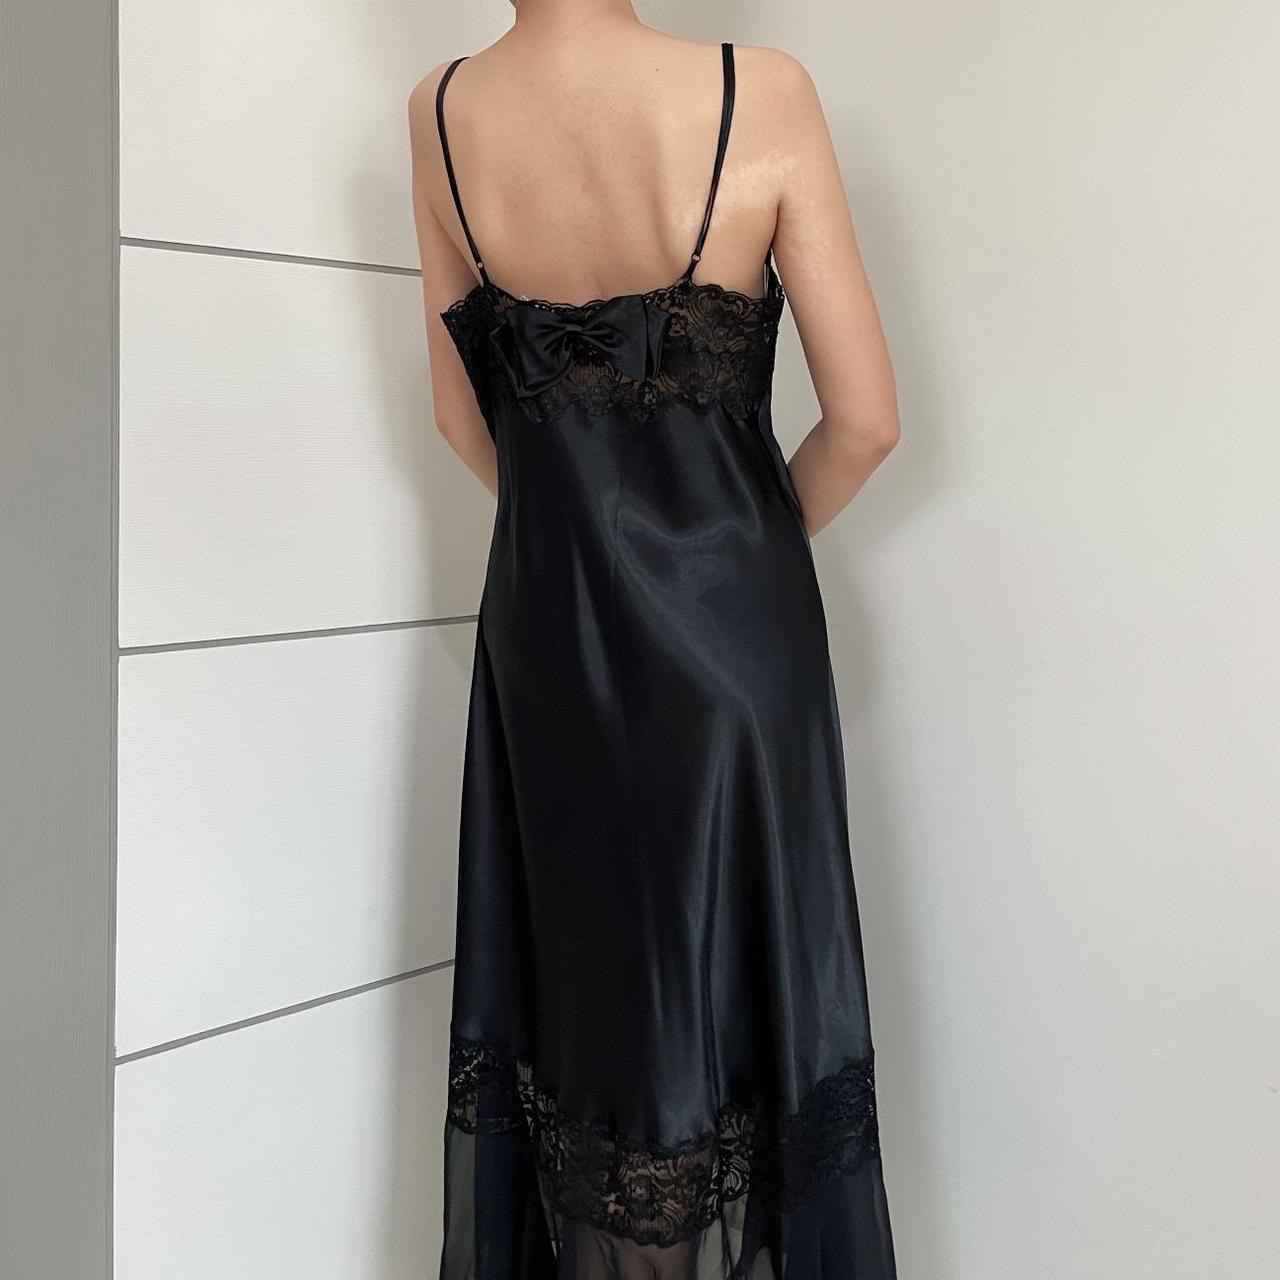 rare! vintage victoria's secret black satin gown... - Depop